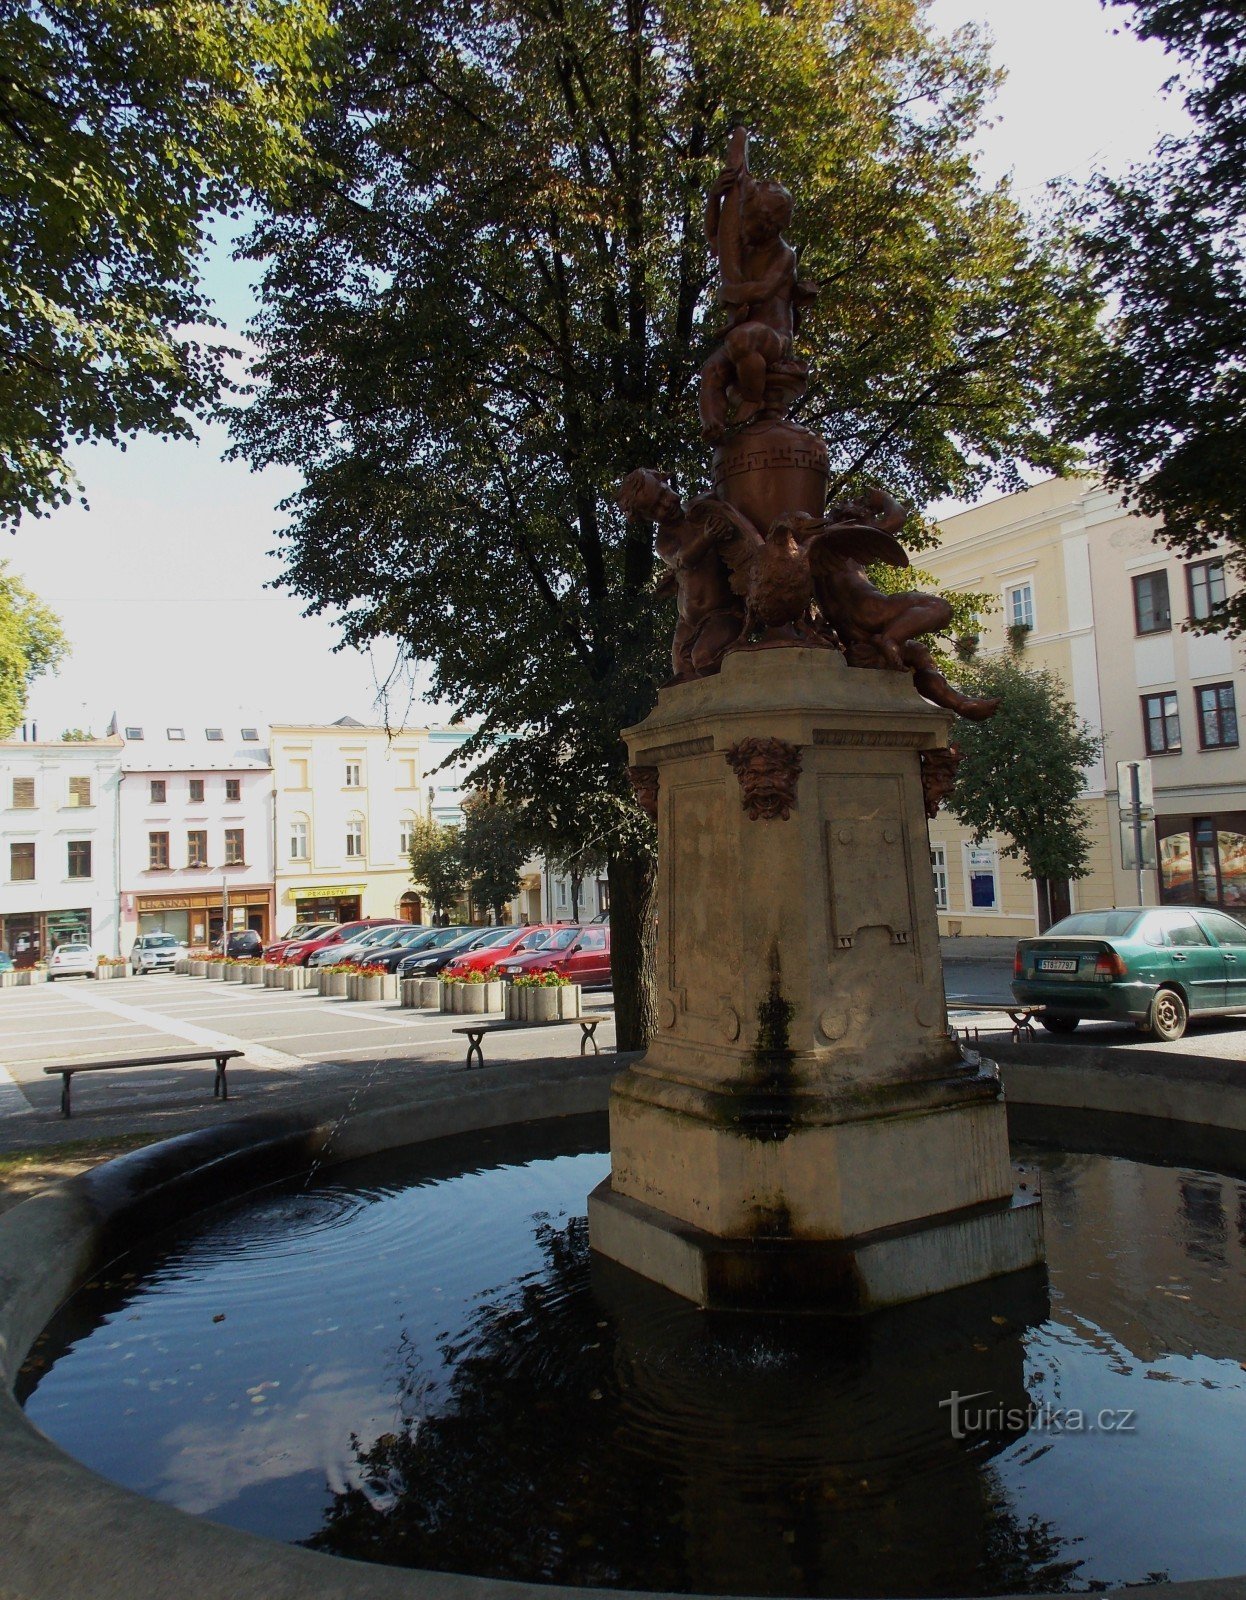 Đài phun nước - đặc điểm nổi bật của Quảng trường Masaryk ở Odary